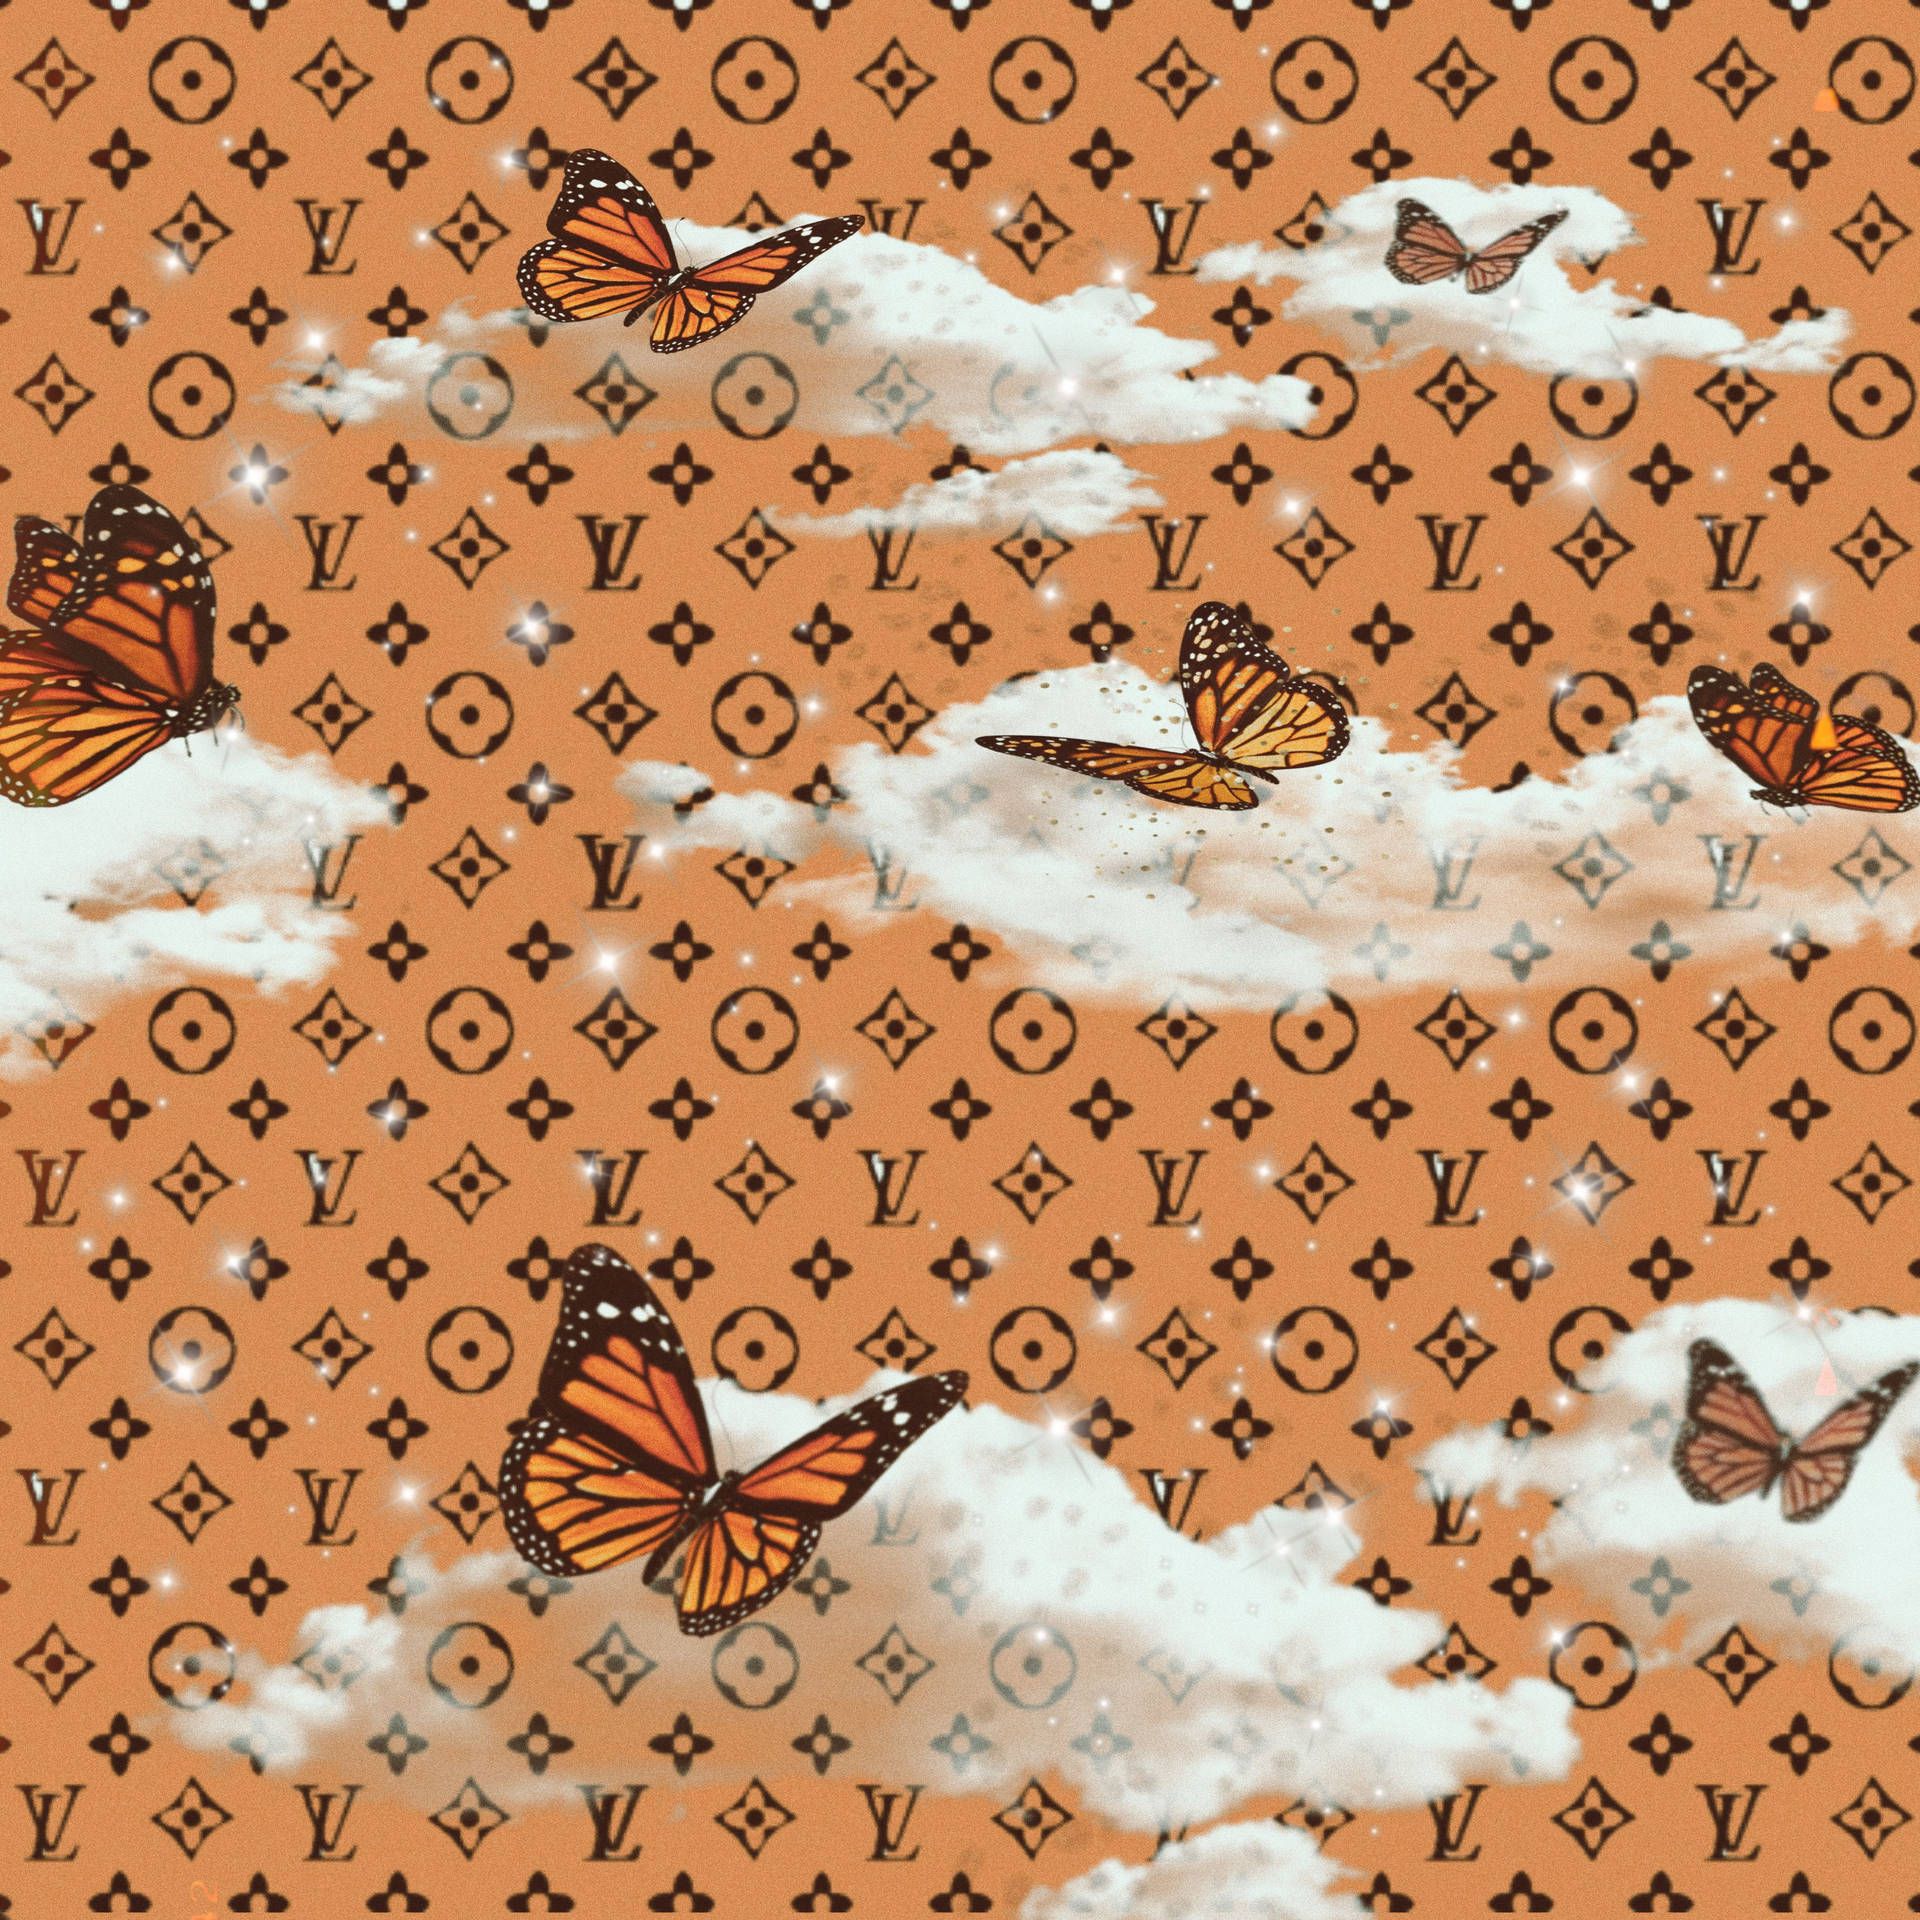 A pattern of Louis Vuitton logos, butterflies, and clouds - Louis Vuitton